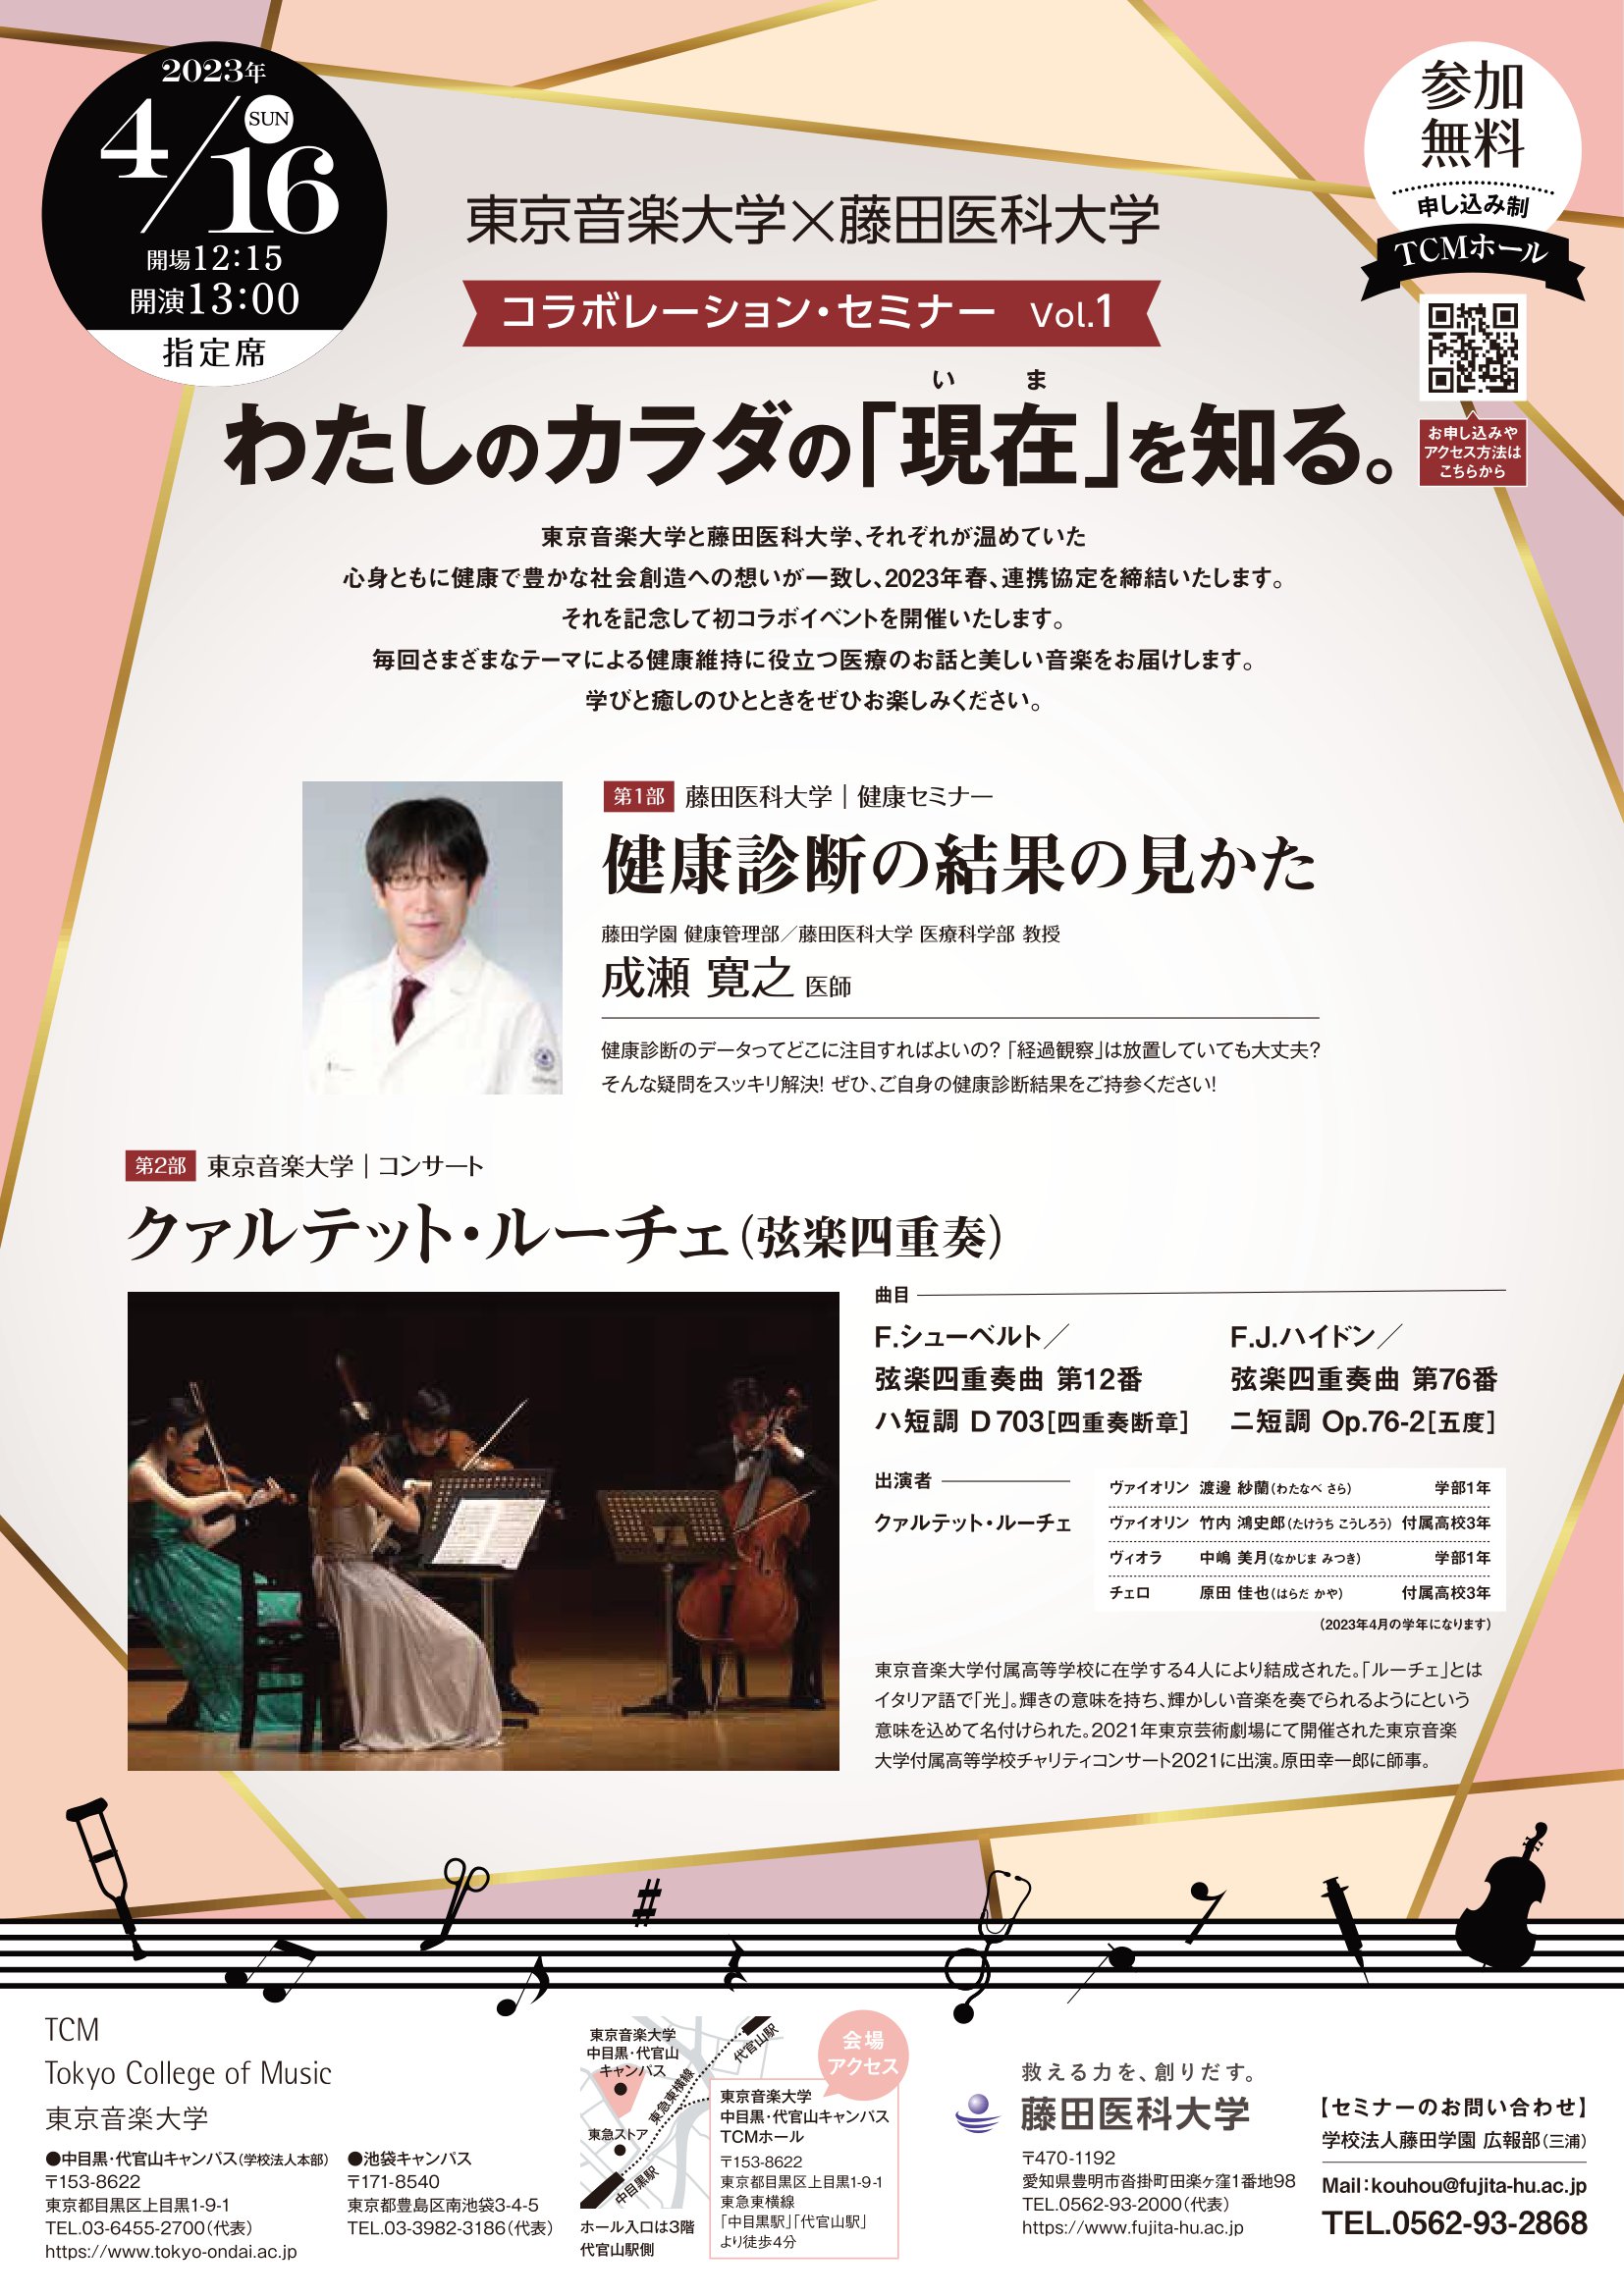 東京音楽大学×藤田医科大学 コラボレーション・セミナー Vol.1　わたしのカラダの「現在」を知る。